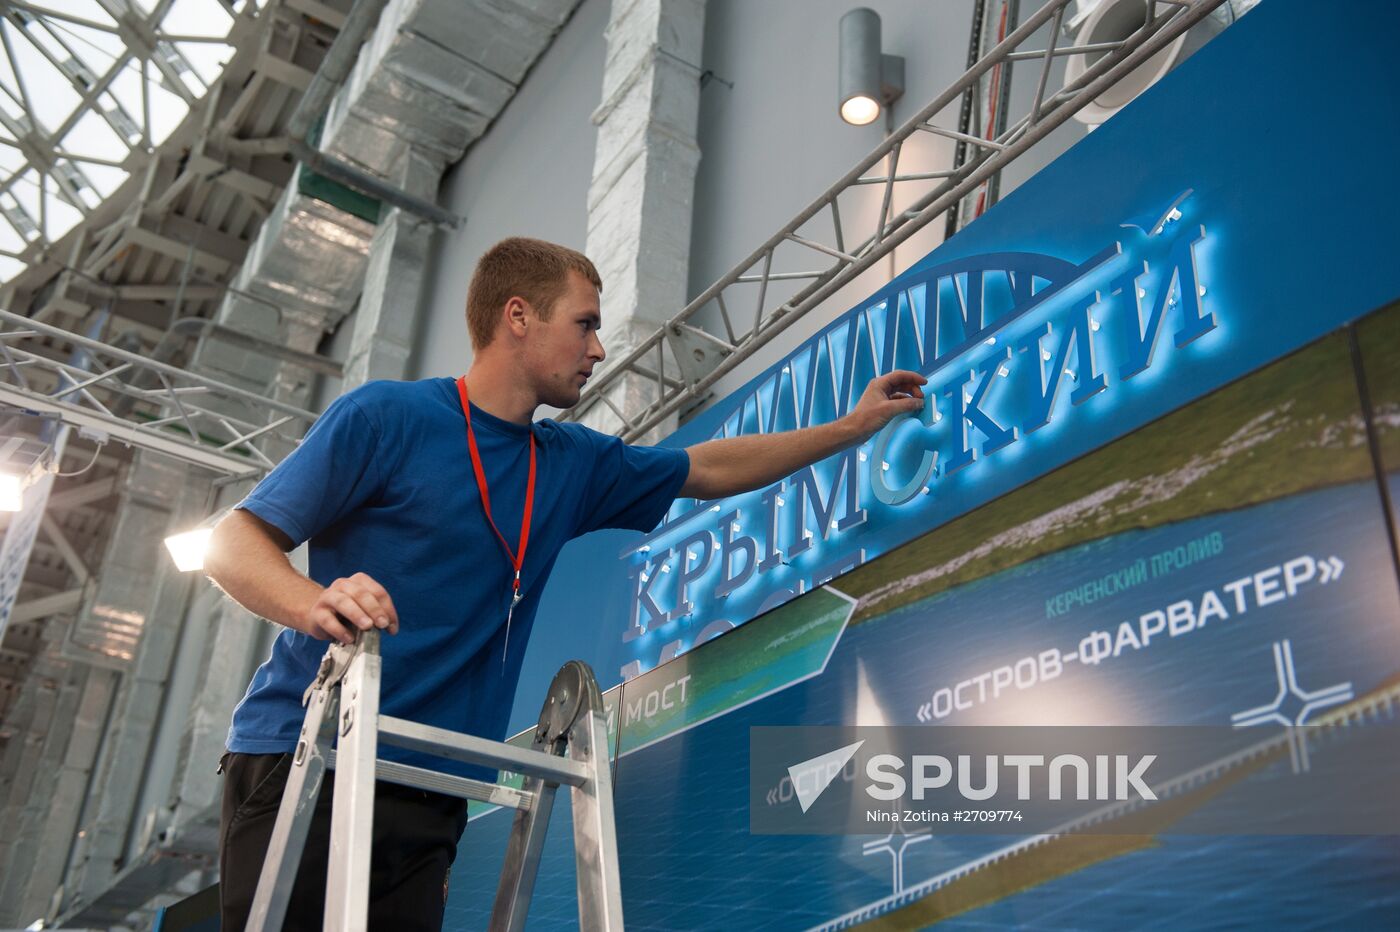 Preparations underway for Sochi 2015 International Investment Forum